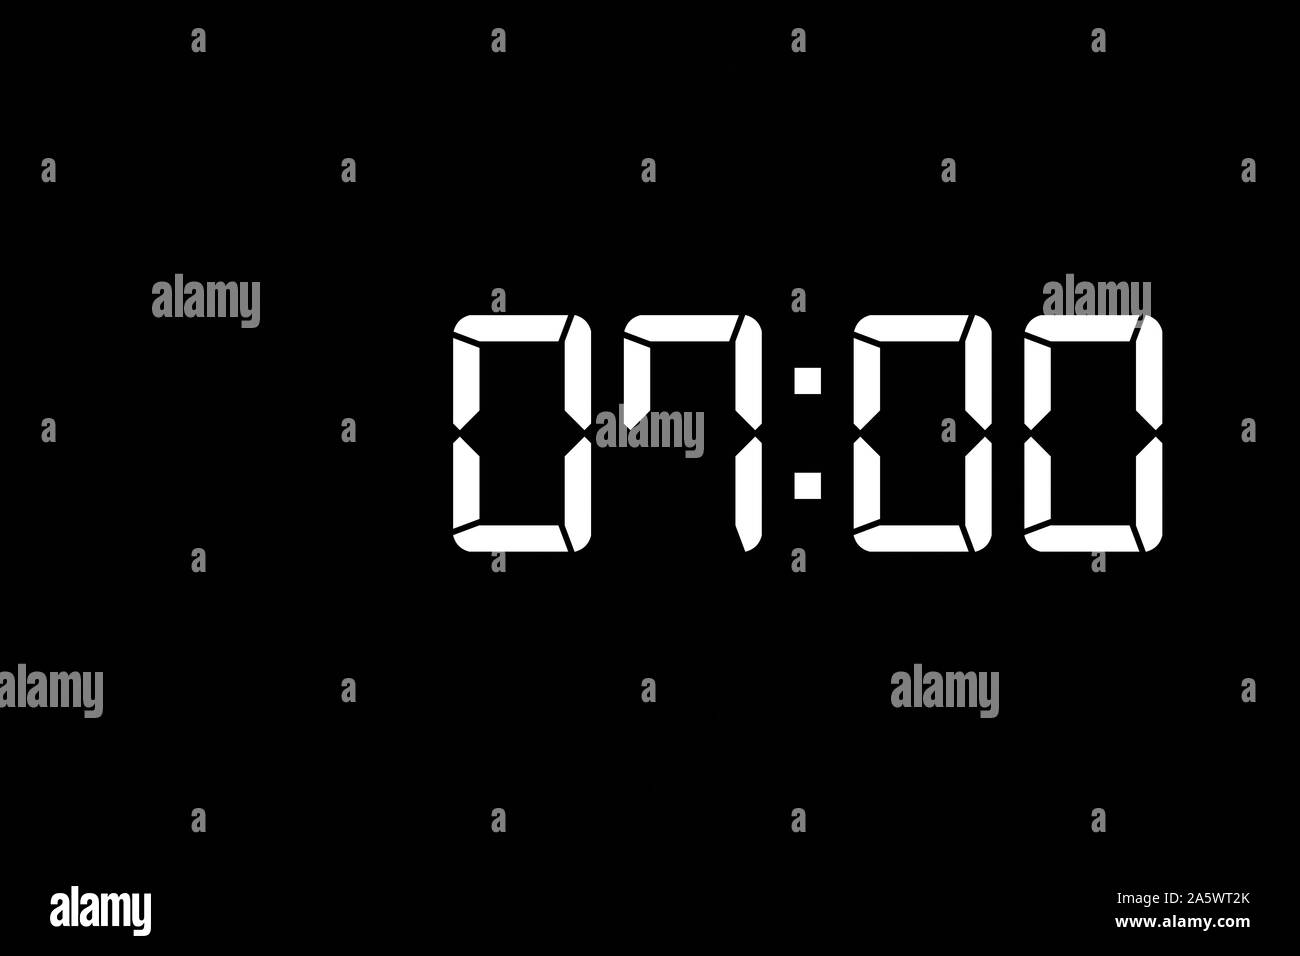 Mostrar el tiempo 07:00 reloj digital con LED blanca sobre fondo negro aislado Foto de stock